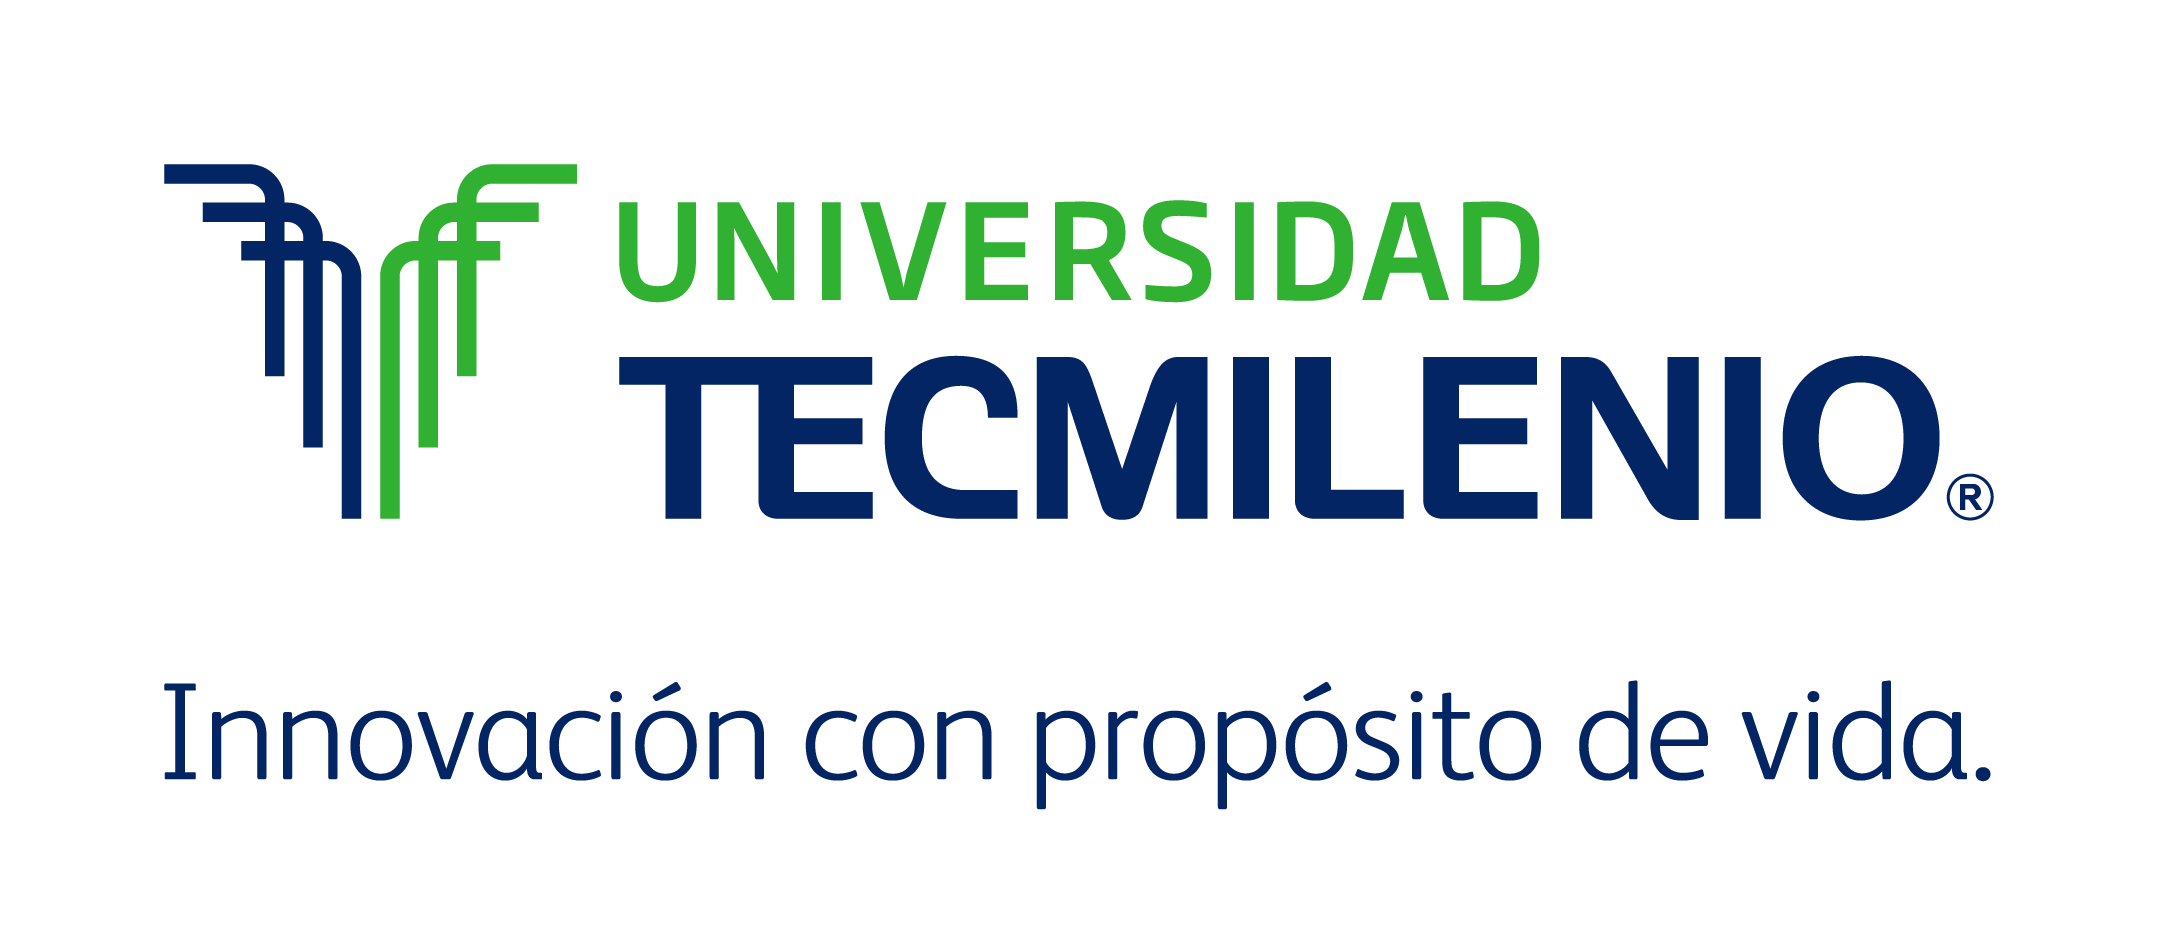 Universidad Tecmilenio Logo photo - 1